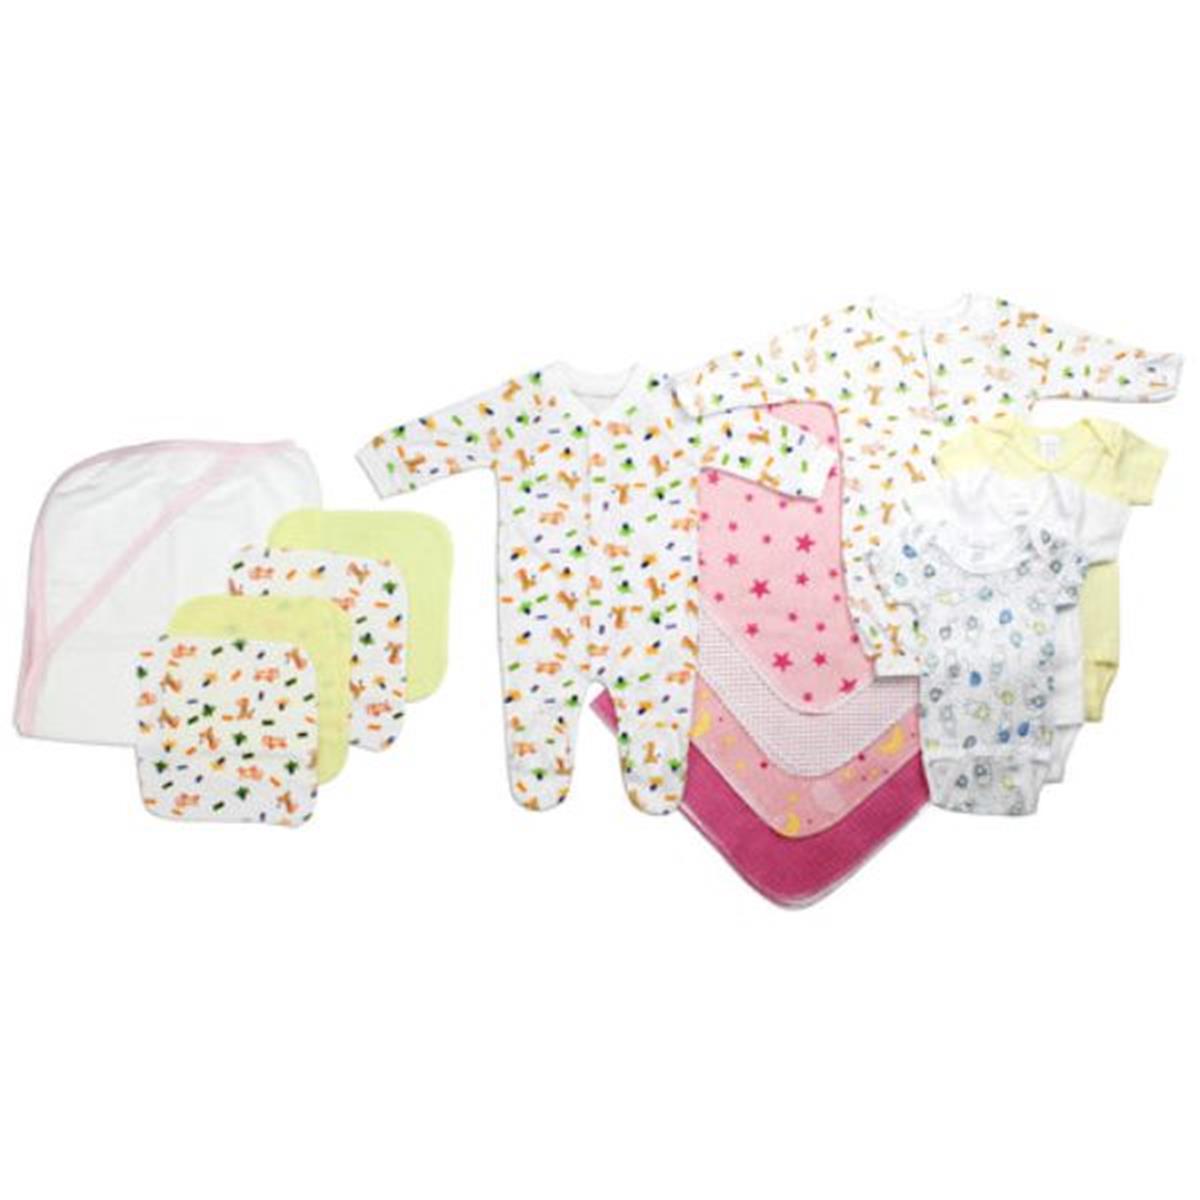 Bambini LS-0037 Newborn Baby Girls Layette Baby Shower Gift Set&#44; White & Pink - Newborn